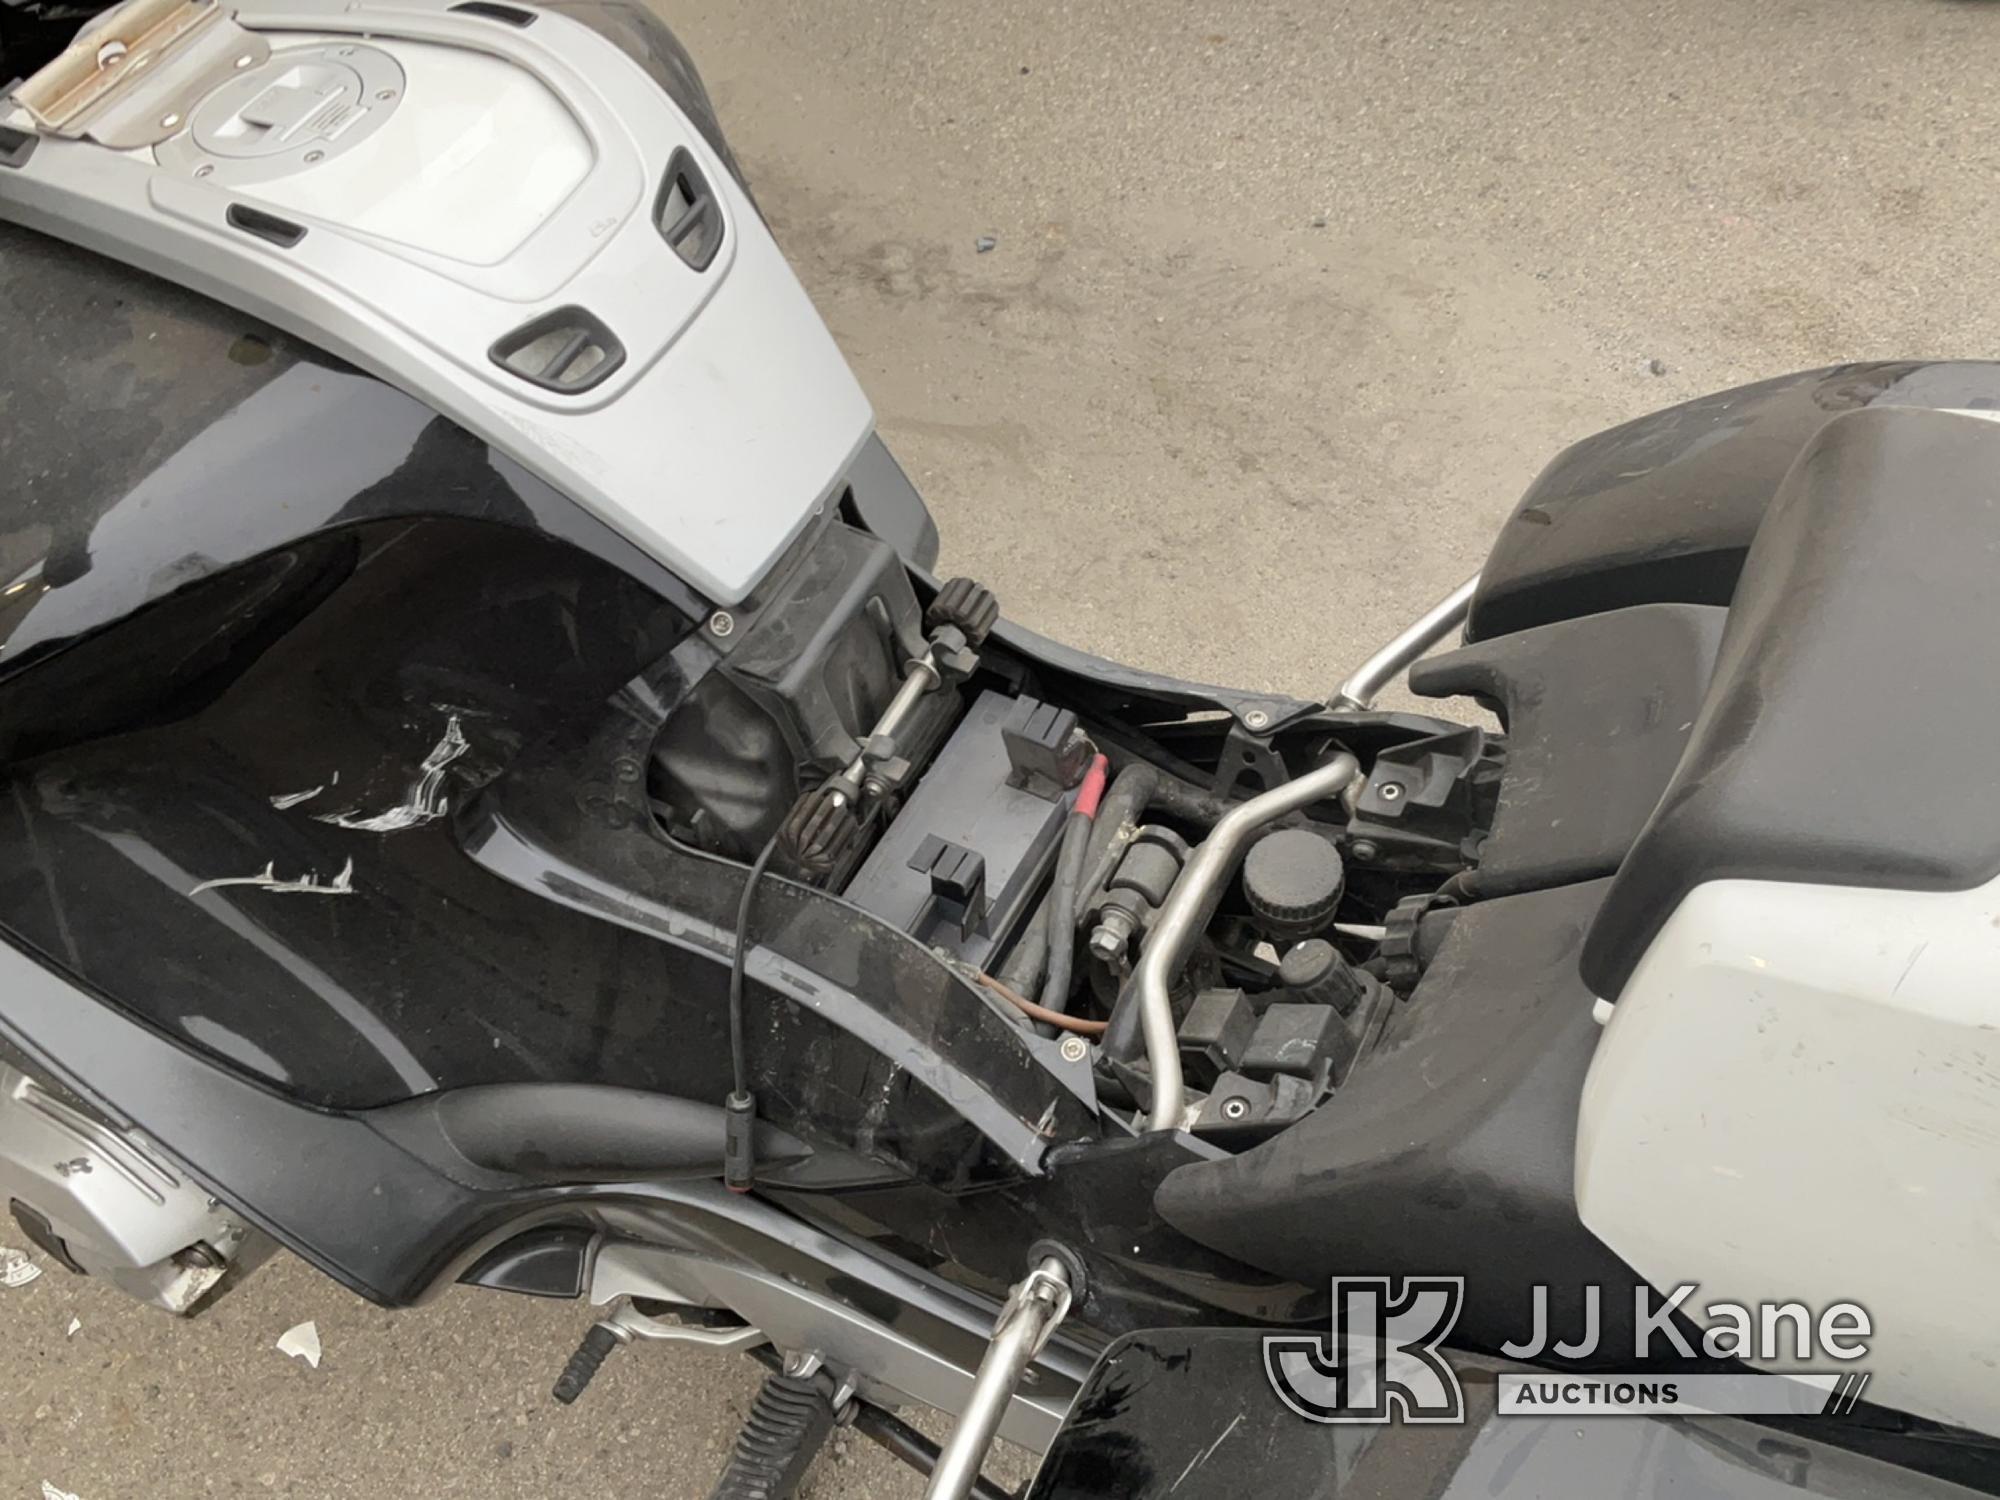 (Jurupa Valley, CA) 2012 BMW Motorcycle Runs & Moves, Running Rough , Smoking , Missing Parts